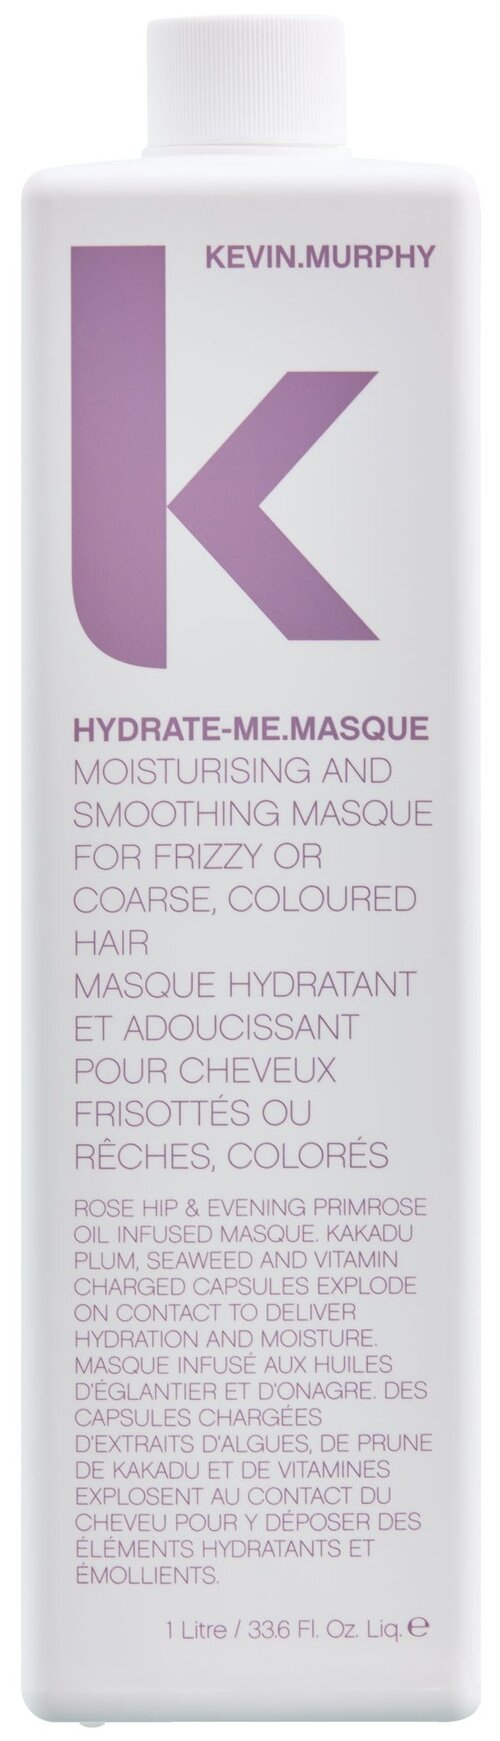 Kevin.Murphy маска для интенсивного увлажнения HYDRATE-ME.MASQUE, 1000 г, 1000 мл, бутылка